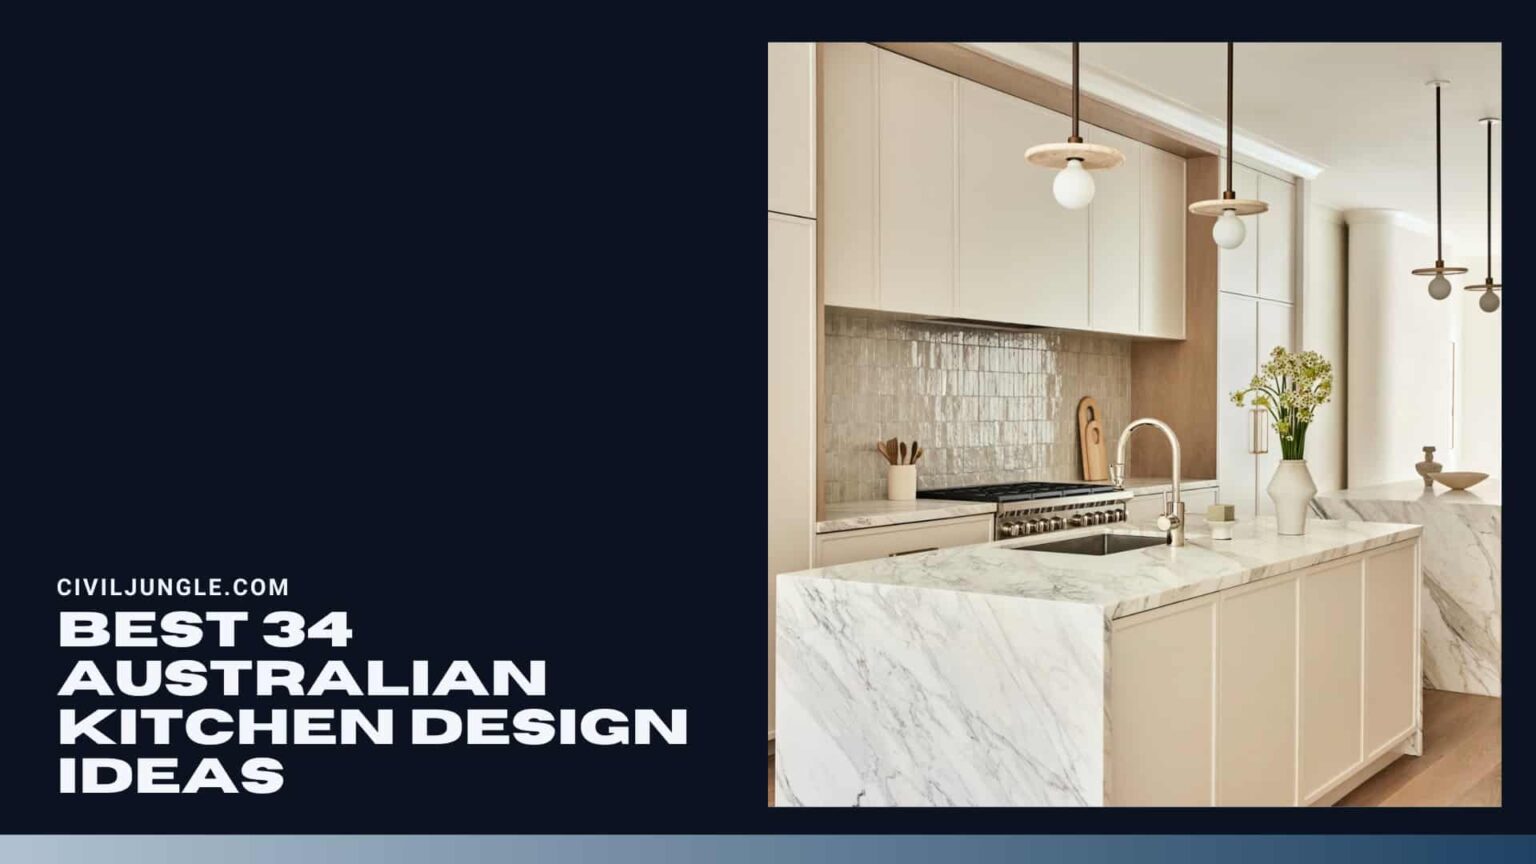 Best 34 Australian Kitchen Design Ideas 1536x864 